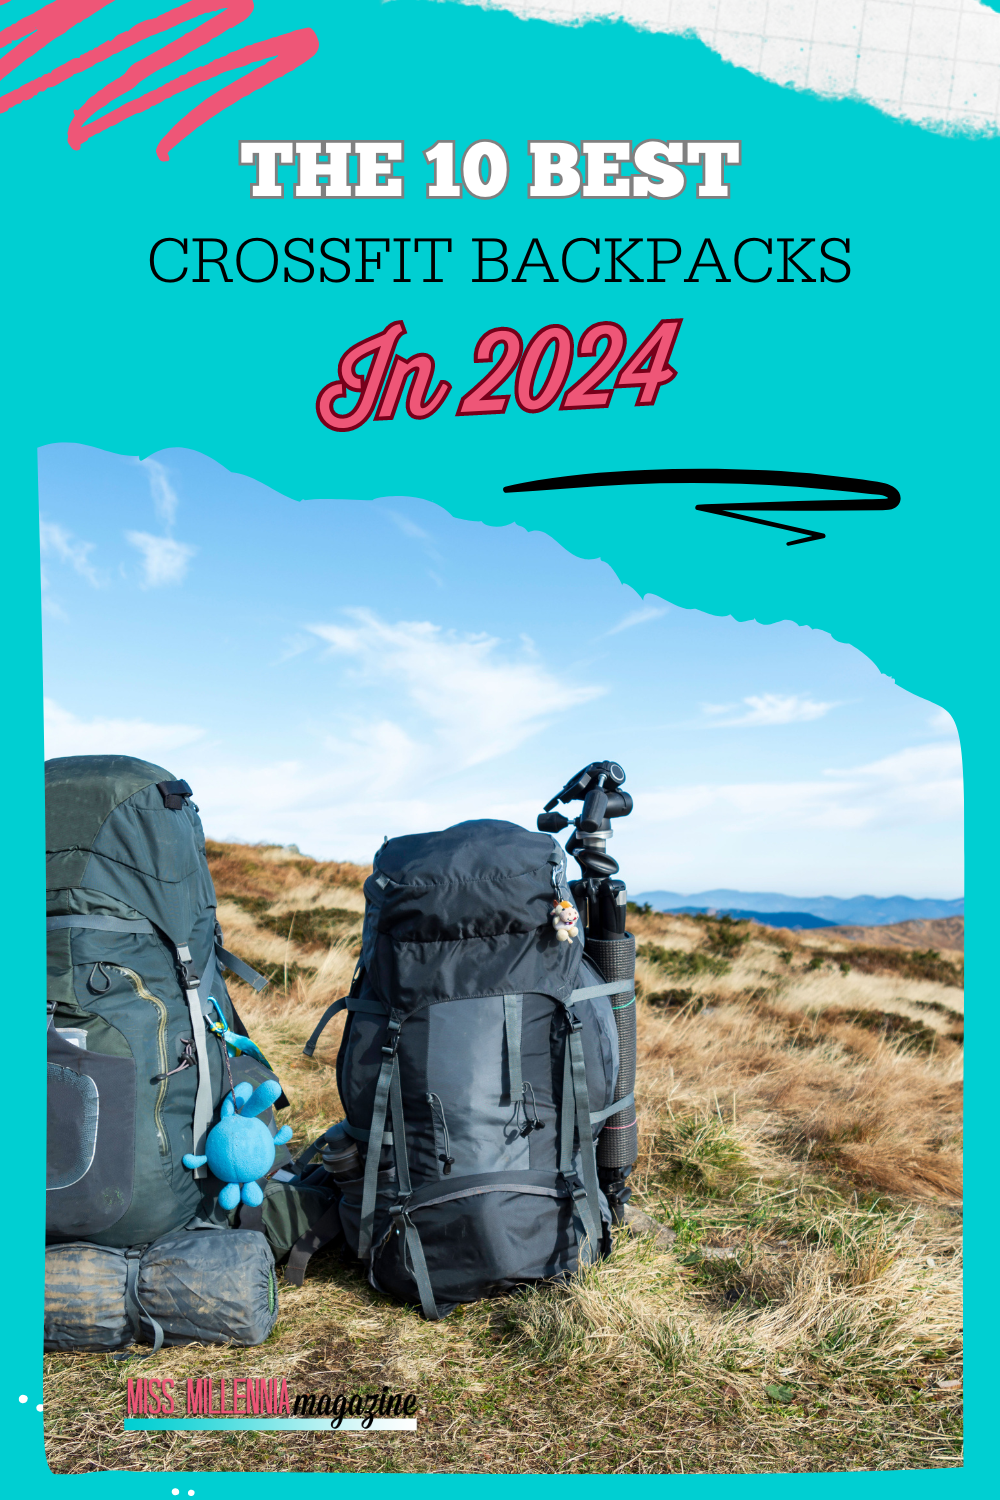 The 10 best CrossFit backpacks in 2024